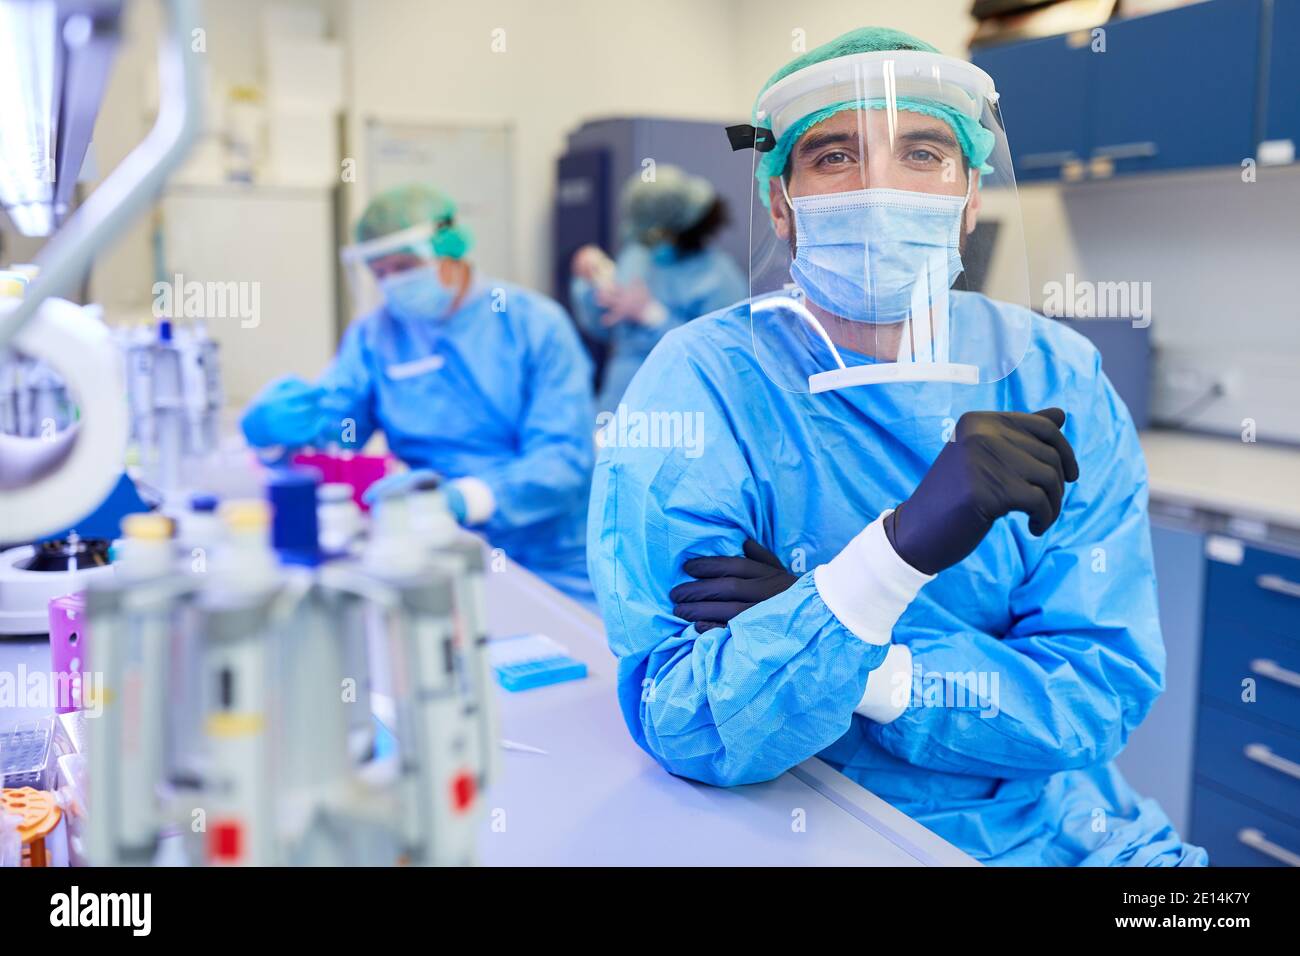 Uomo come ricercatore in abbigliamento protettivo in laboratorio a. Covid-19 ricerca sul vaccino nella pandemia del coronavirus Foto Stock